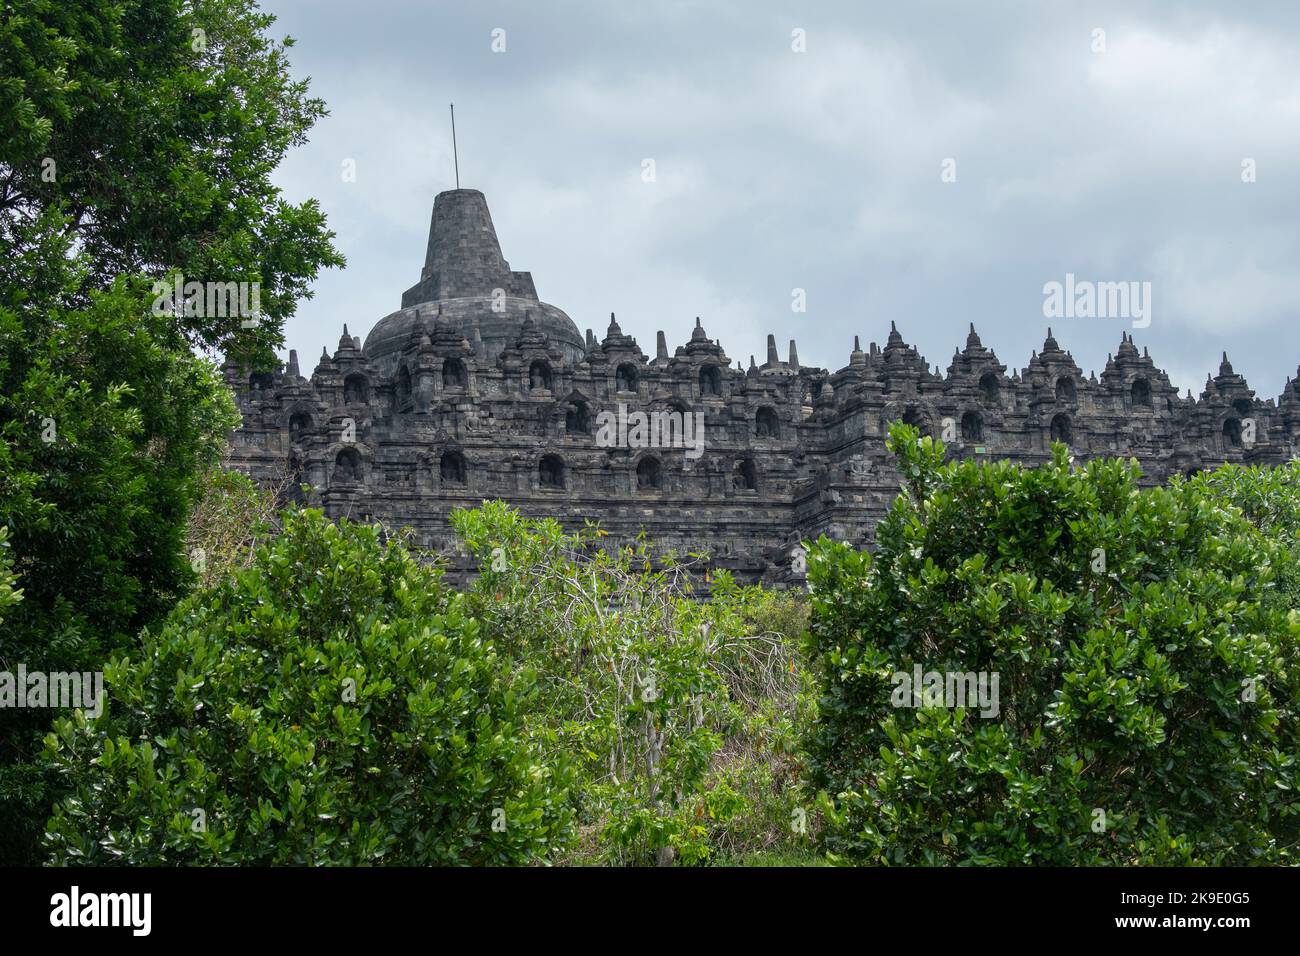 Indonésie, Java, Borobudur. Le plus grand monument bouddhiste du monde, vers 780-840 après J.-C. Patrimoine mondial de l'UNESCO. Banque D'Images